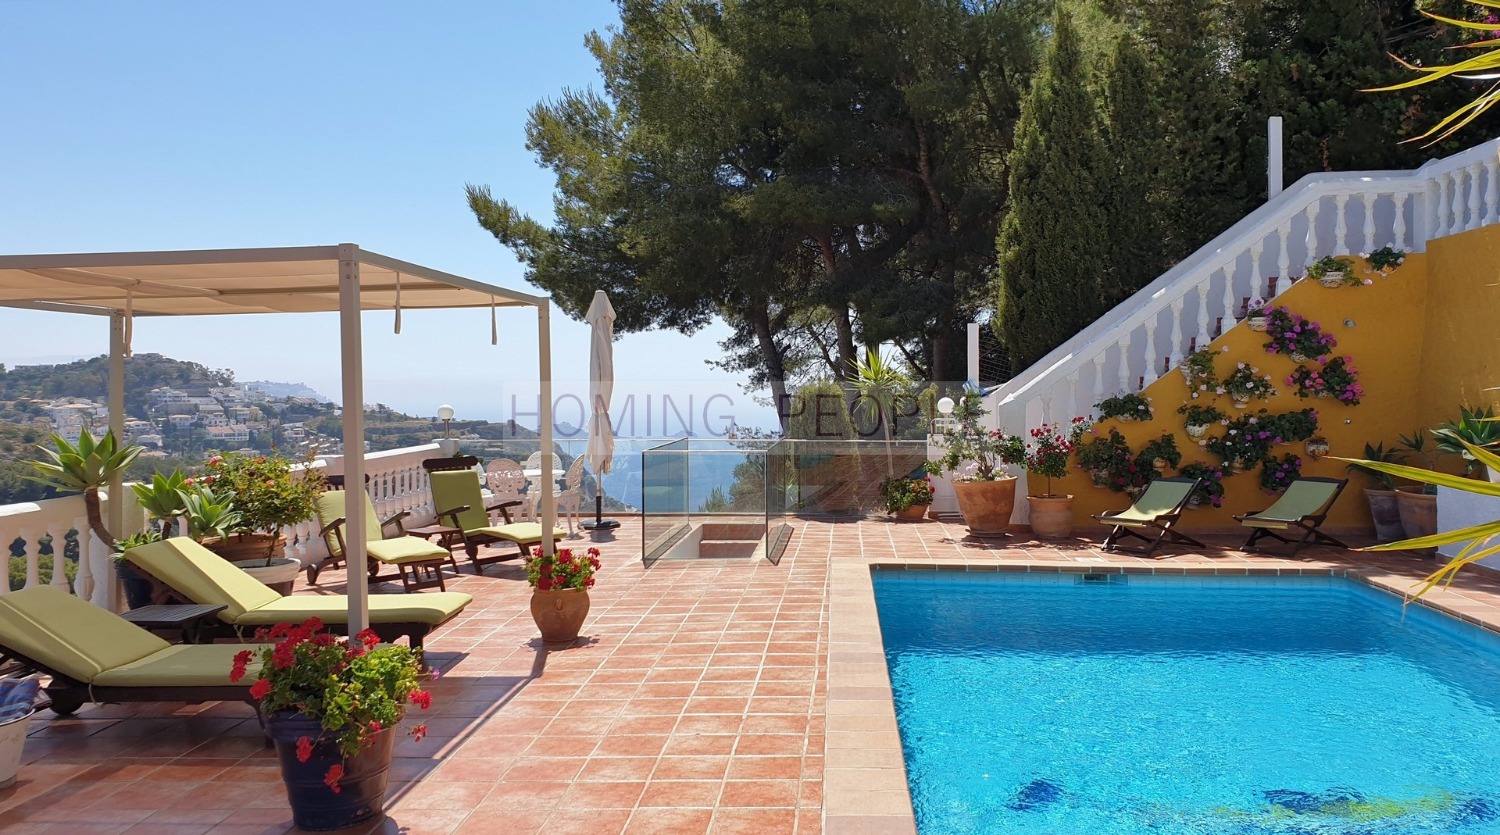 VENDIDO_Villa con piscina y vistas al mar, situado en zona residencial muy apreciada